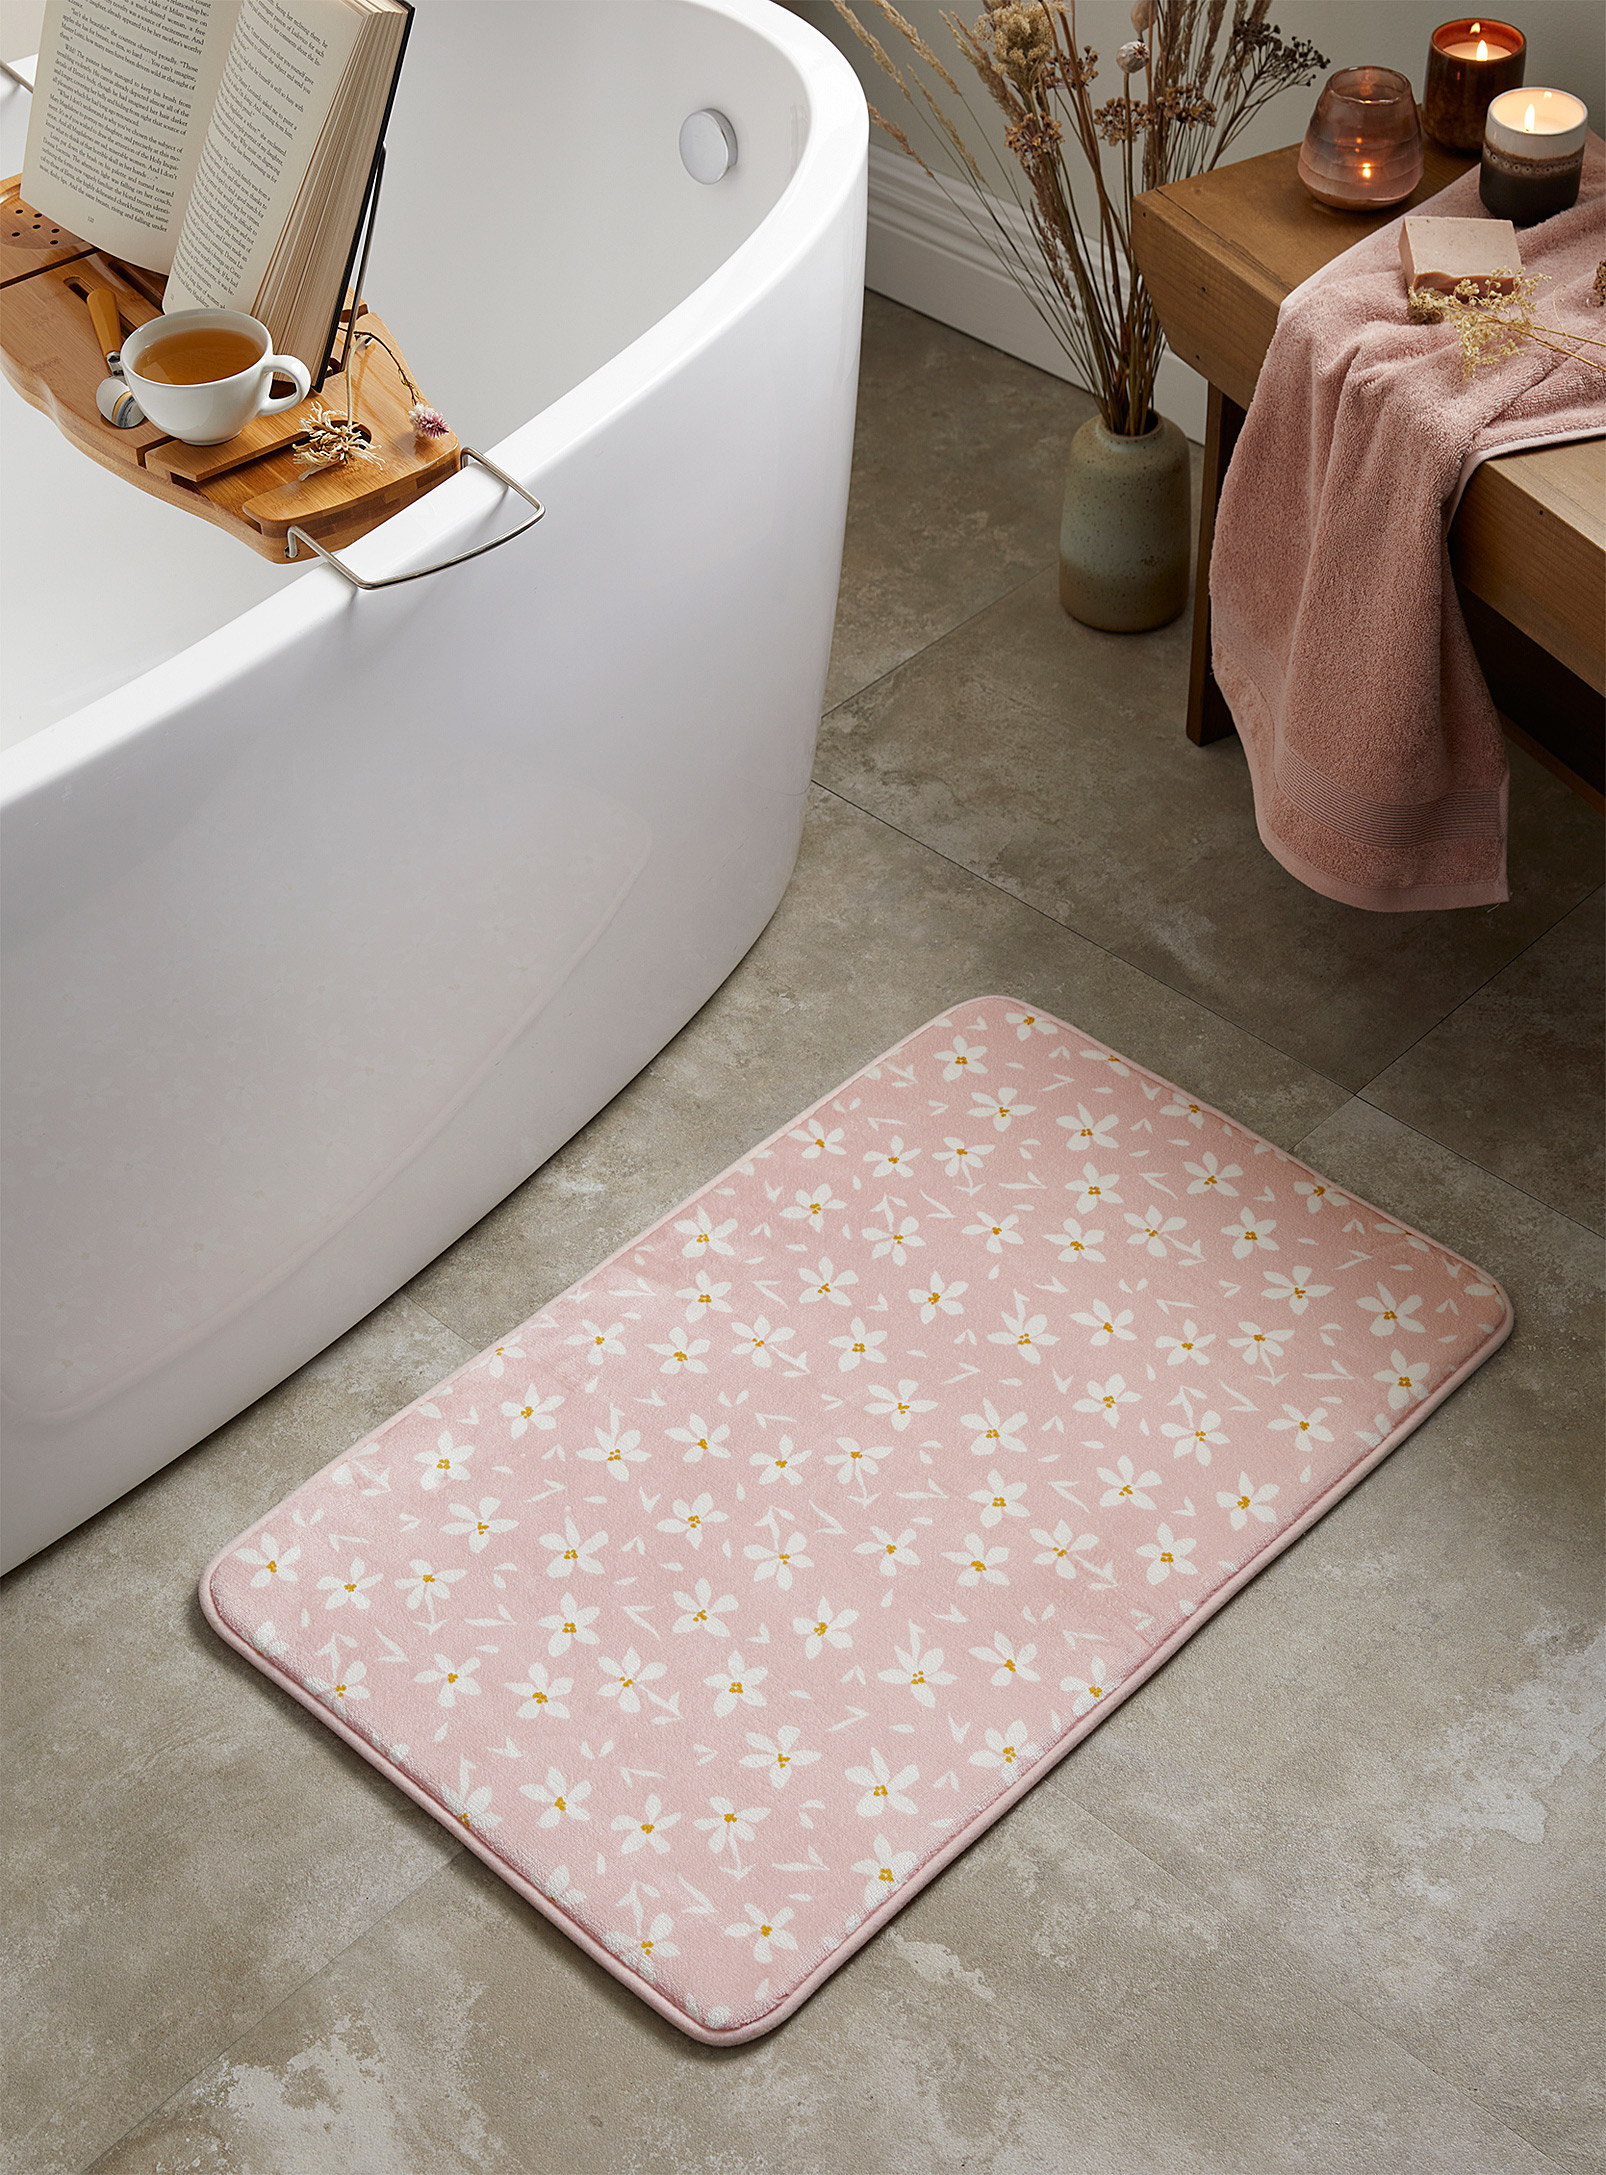 A thick bath mat next to a bathtub